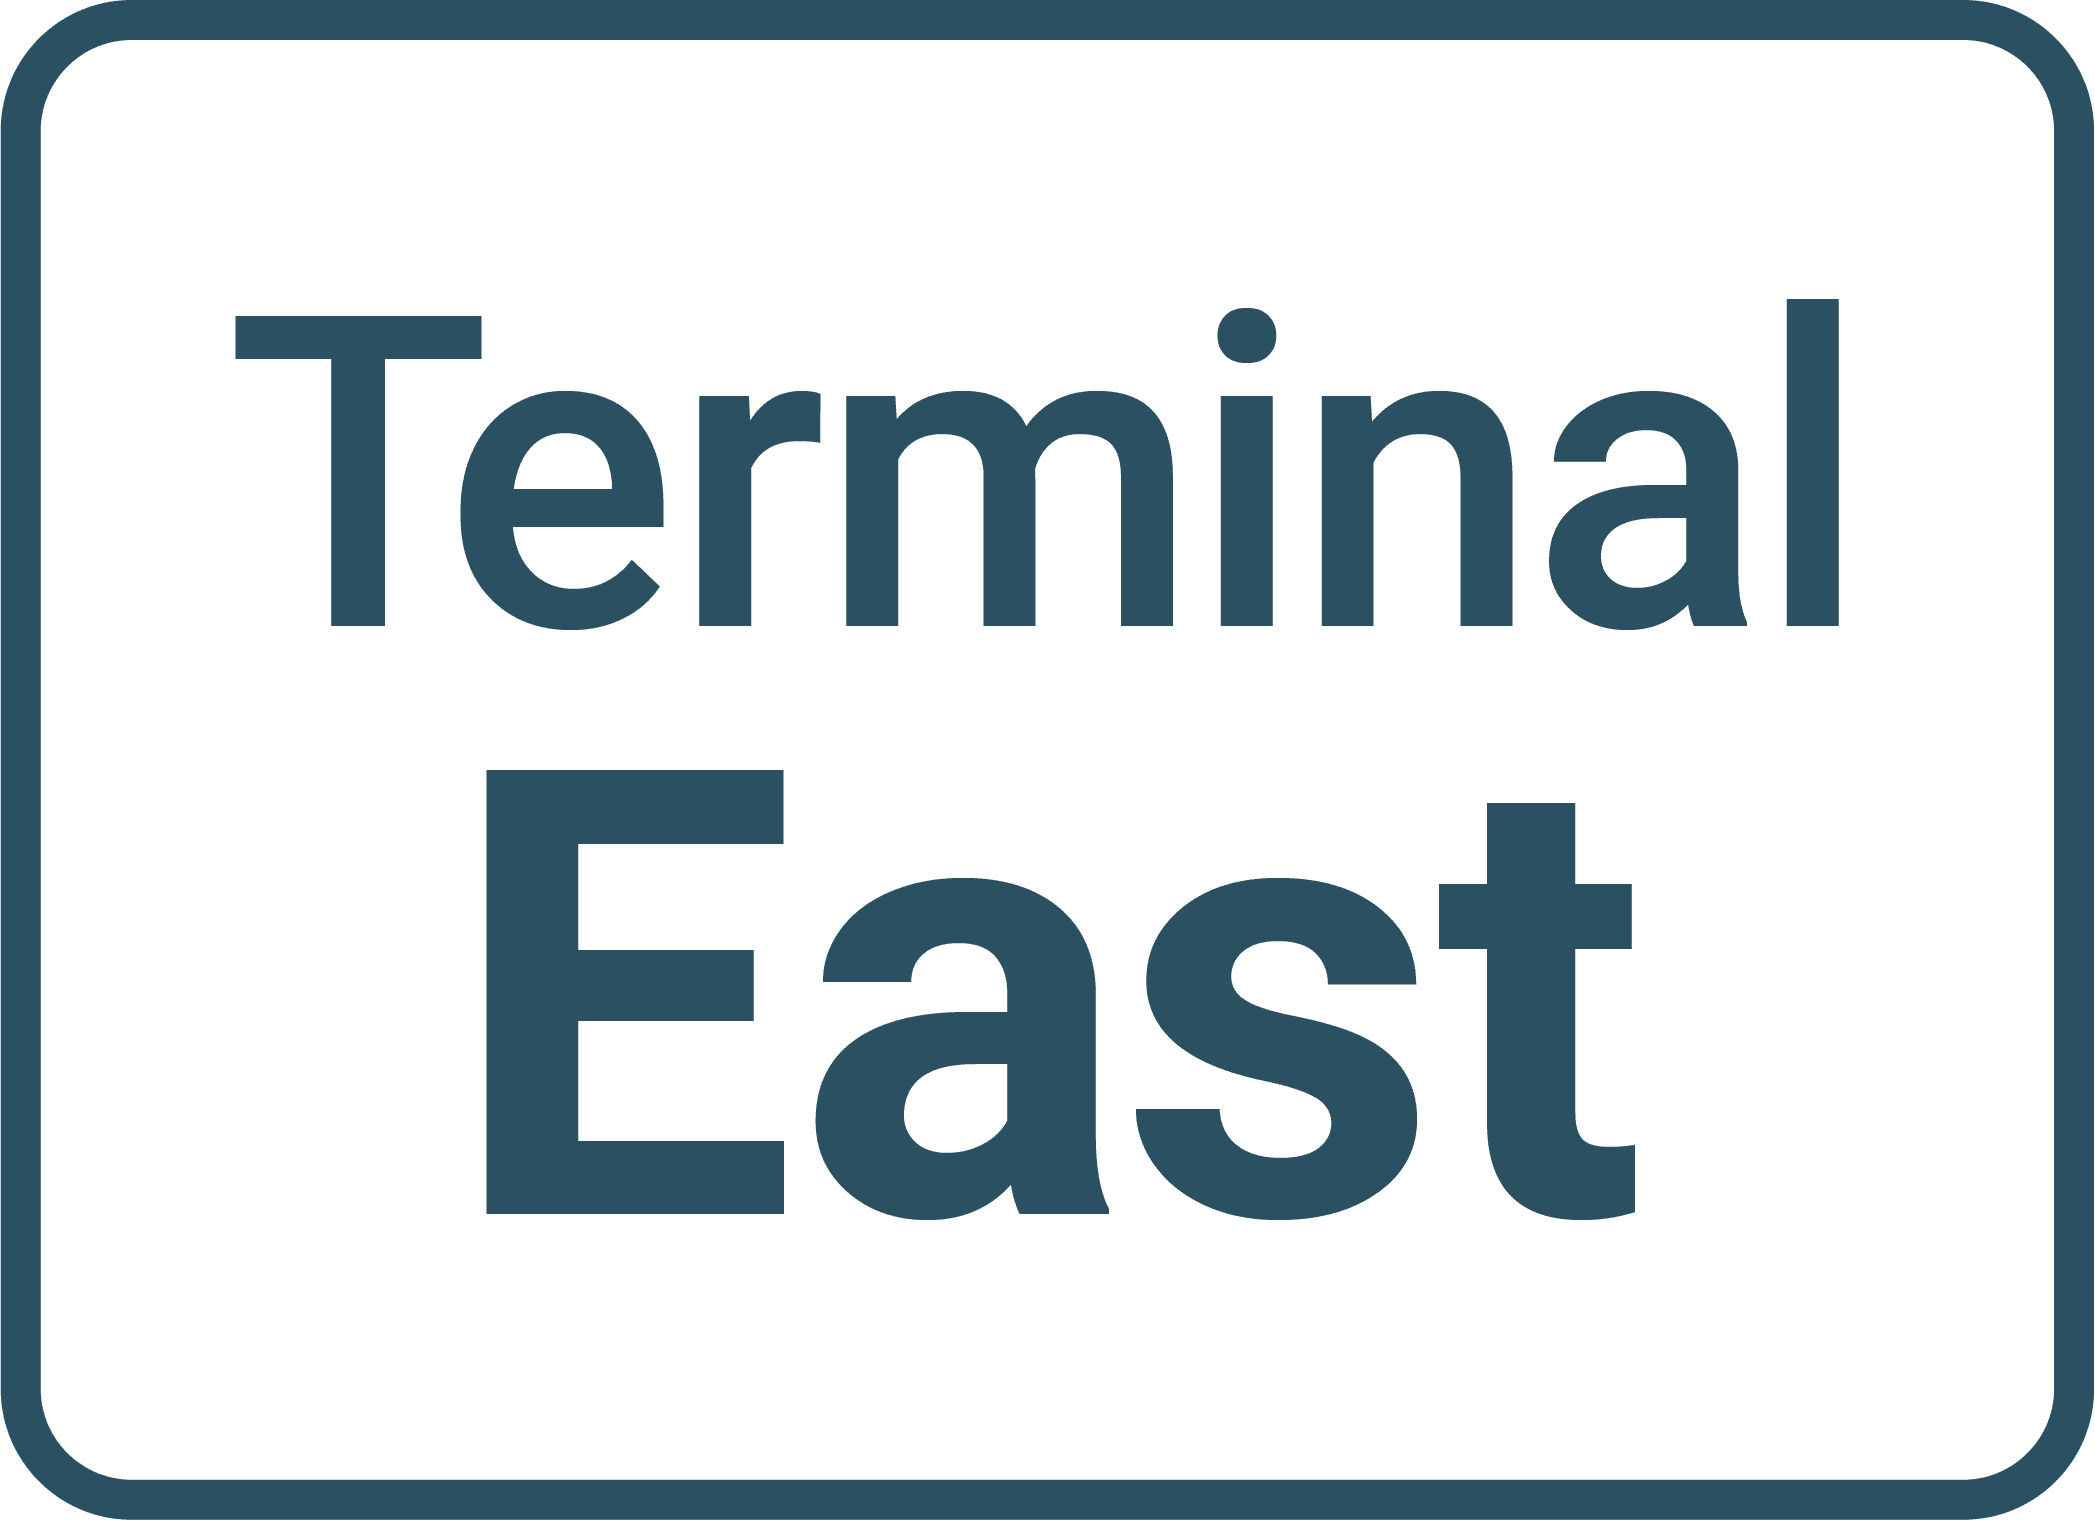 Terminal East at Denver Airport